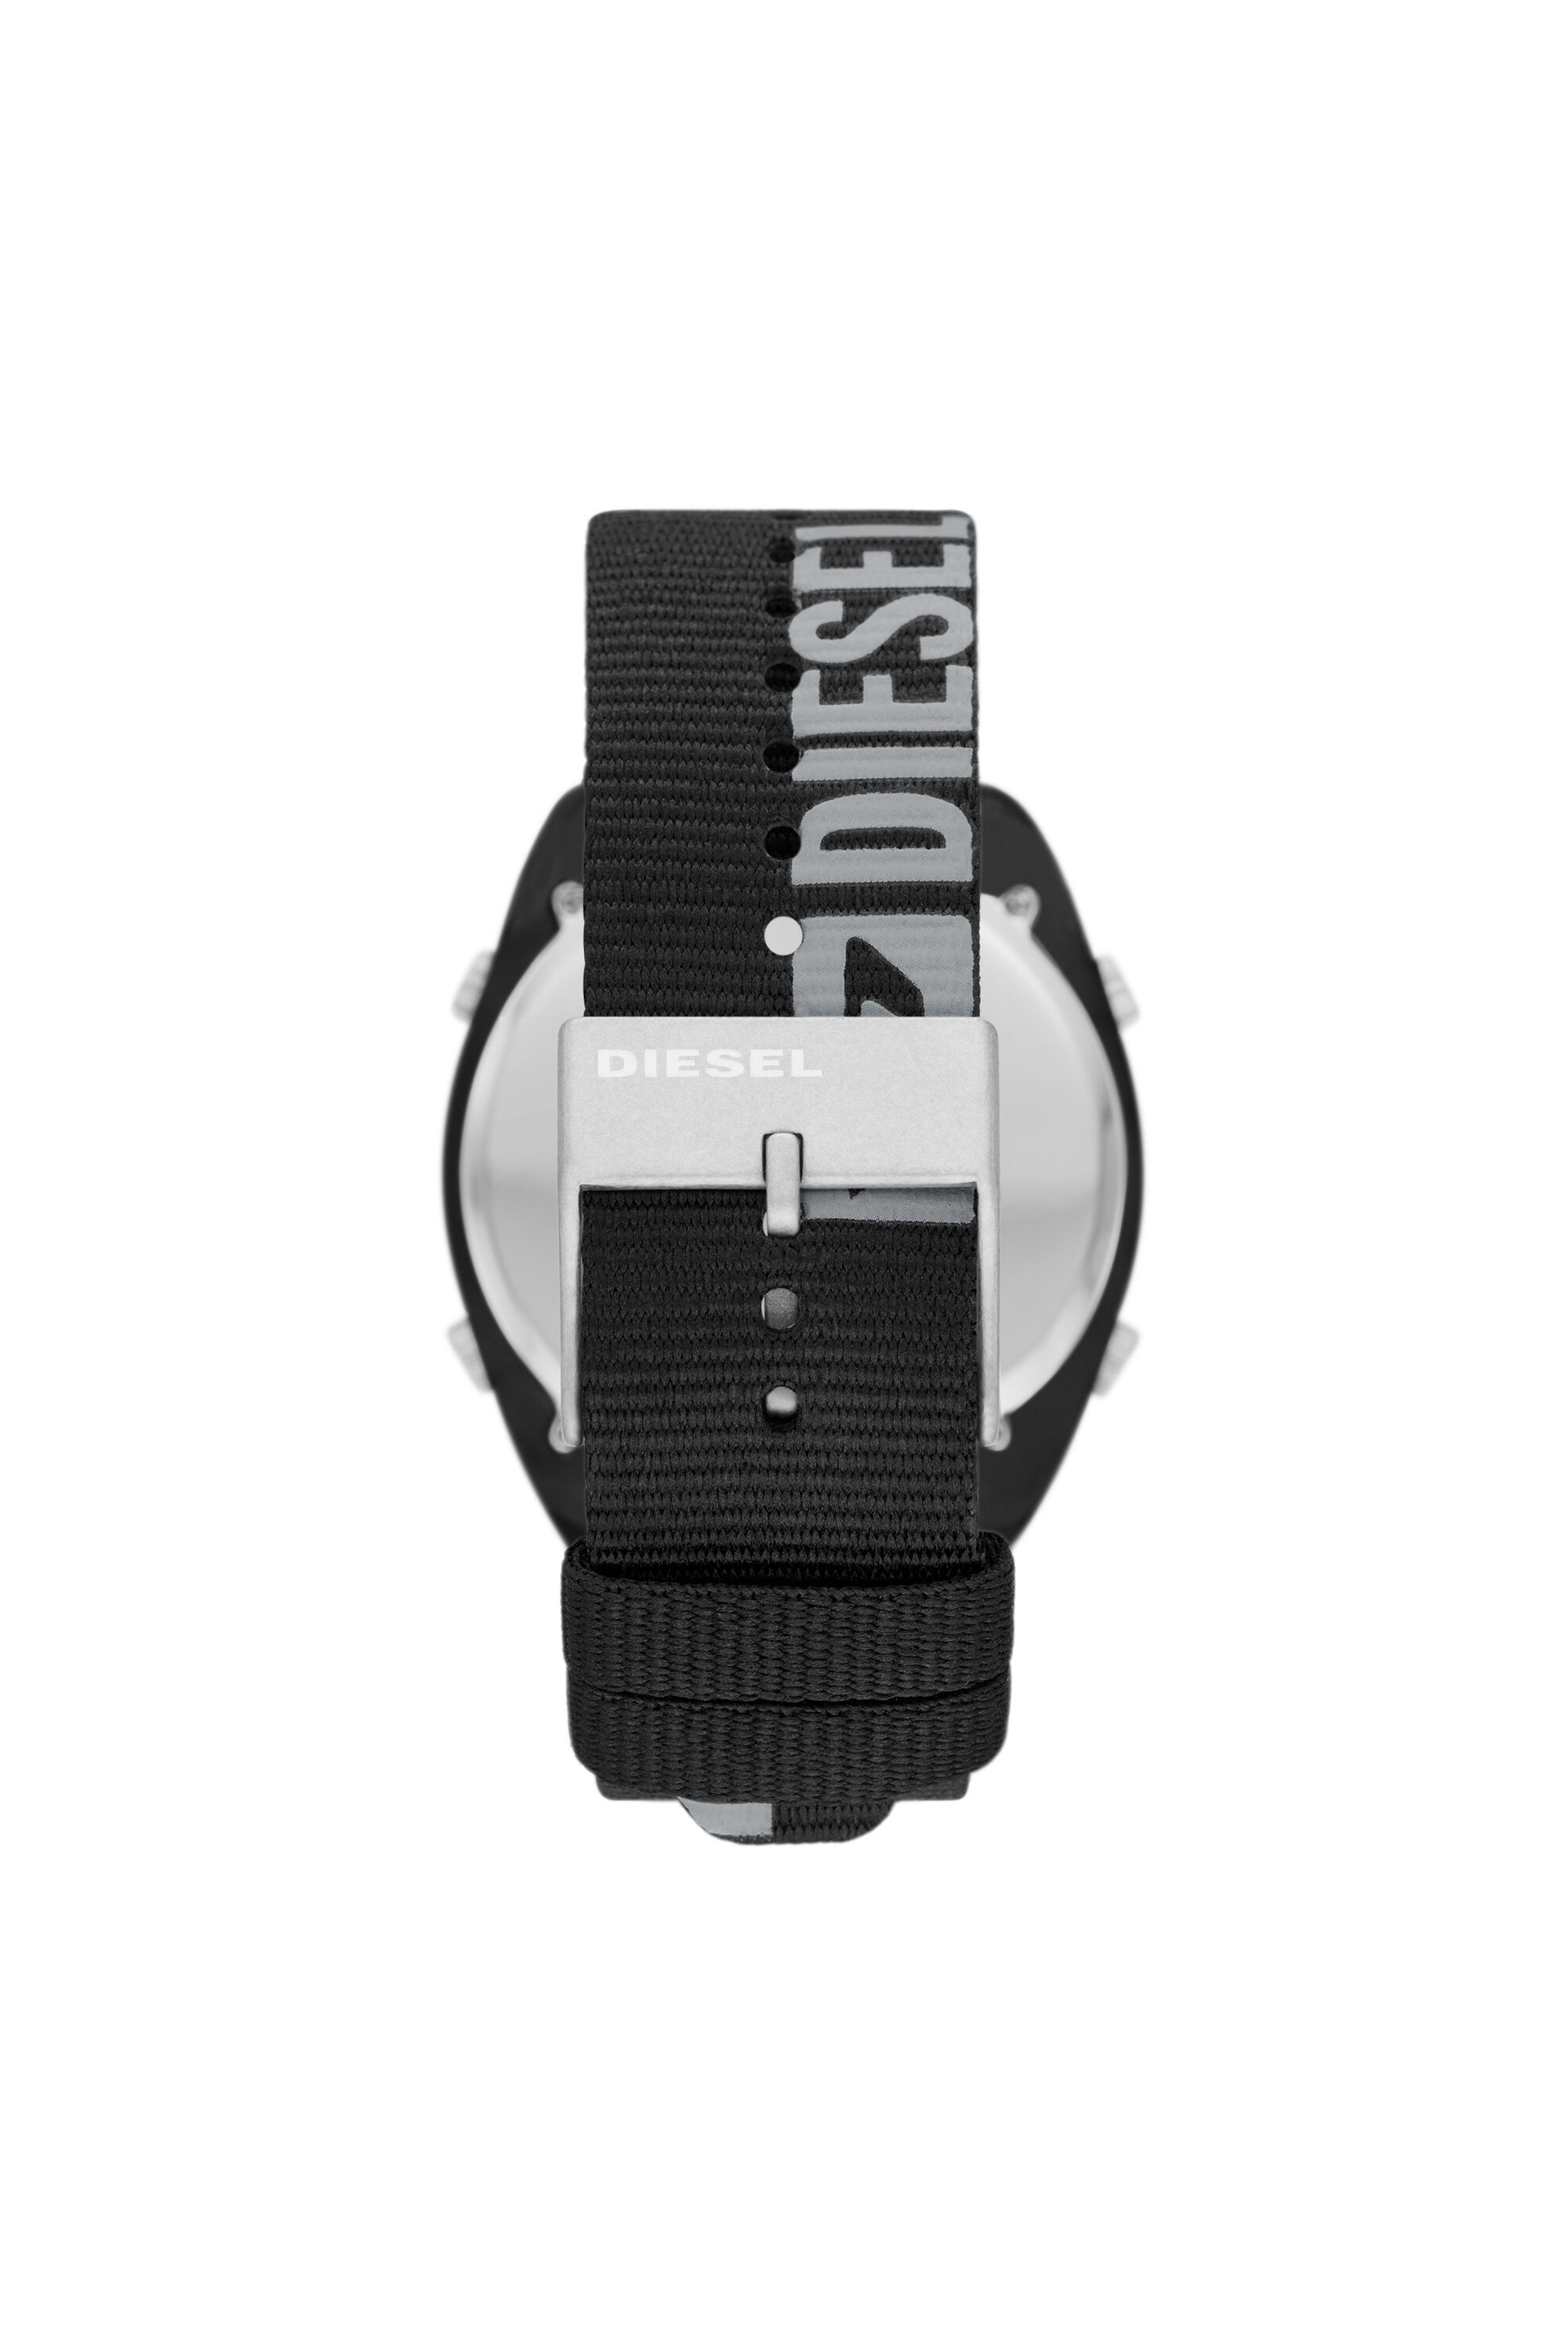 Reloj Diesel de hombre, digital en negro, con correa piel ref. DZ7086